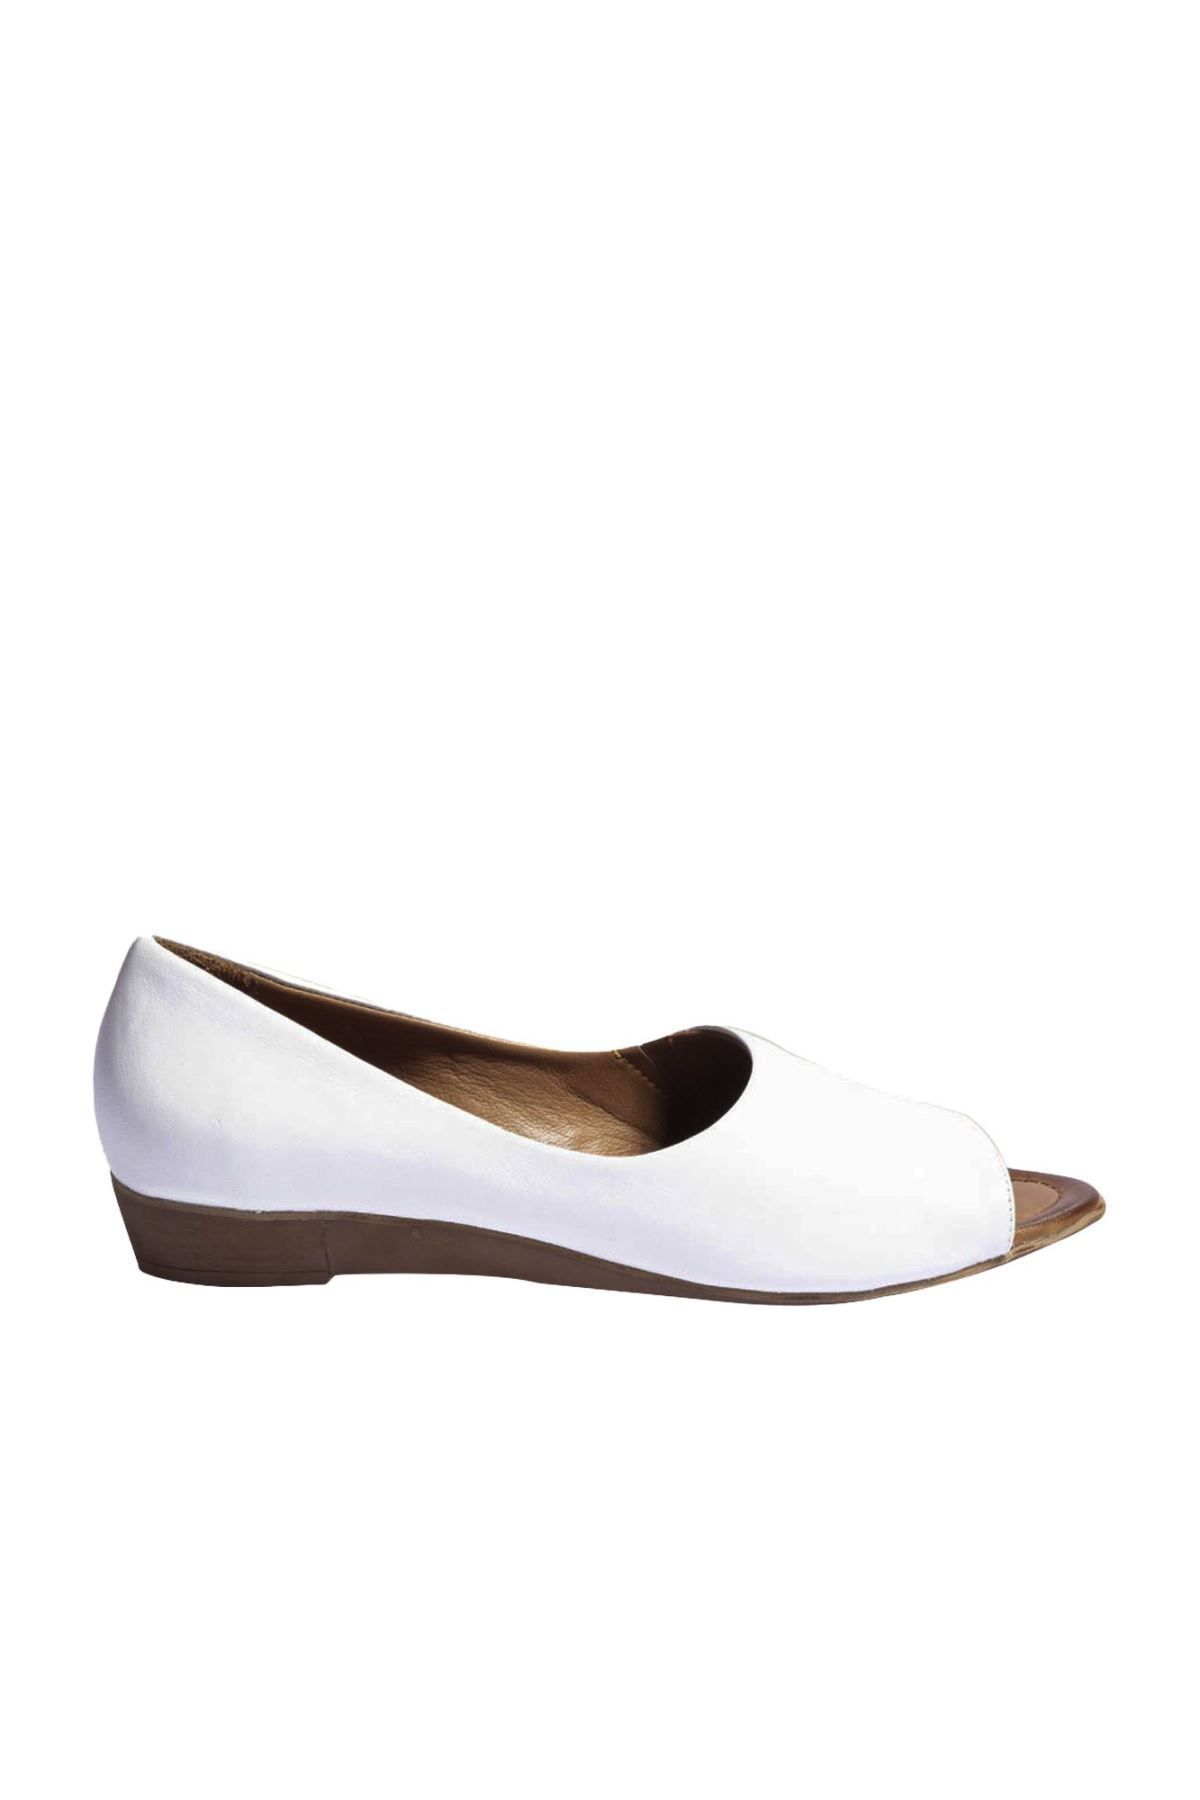 BUENO Shoes Beyaz Deri Kadın Dolgu Topuklu Sandalet